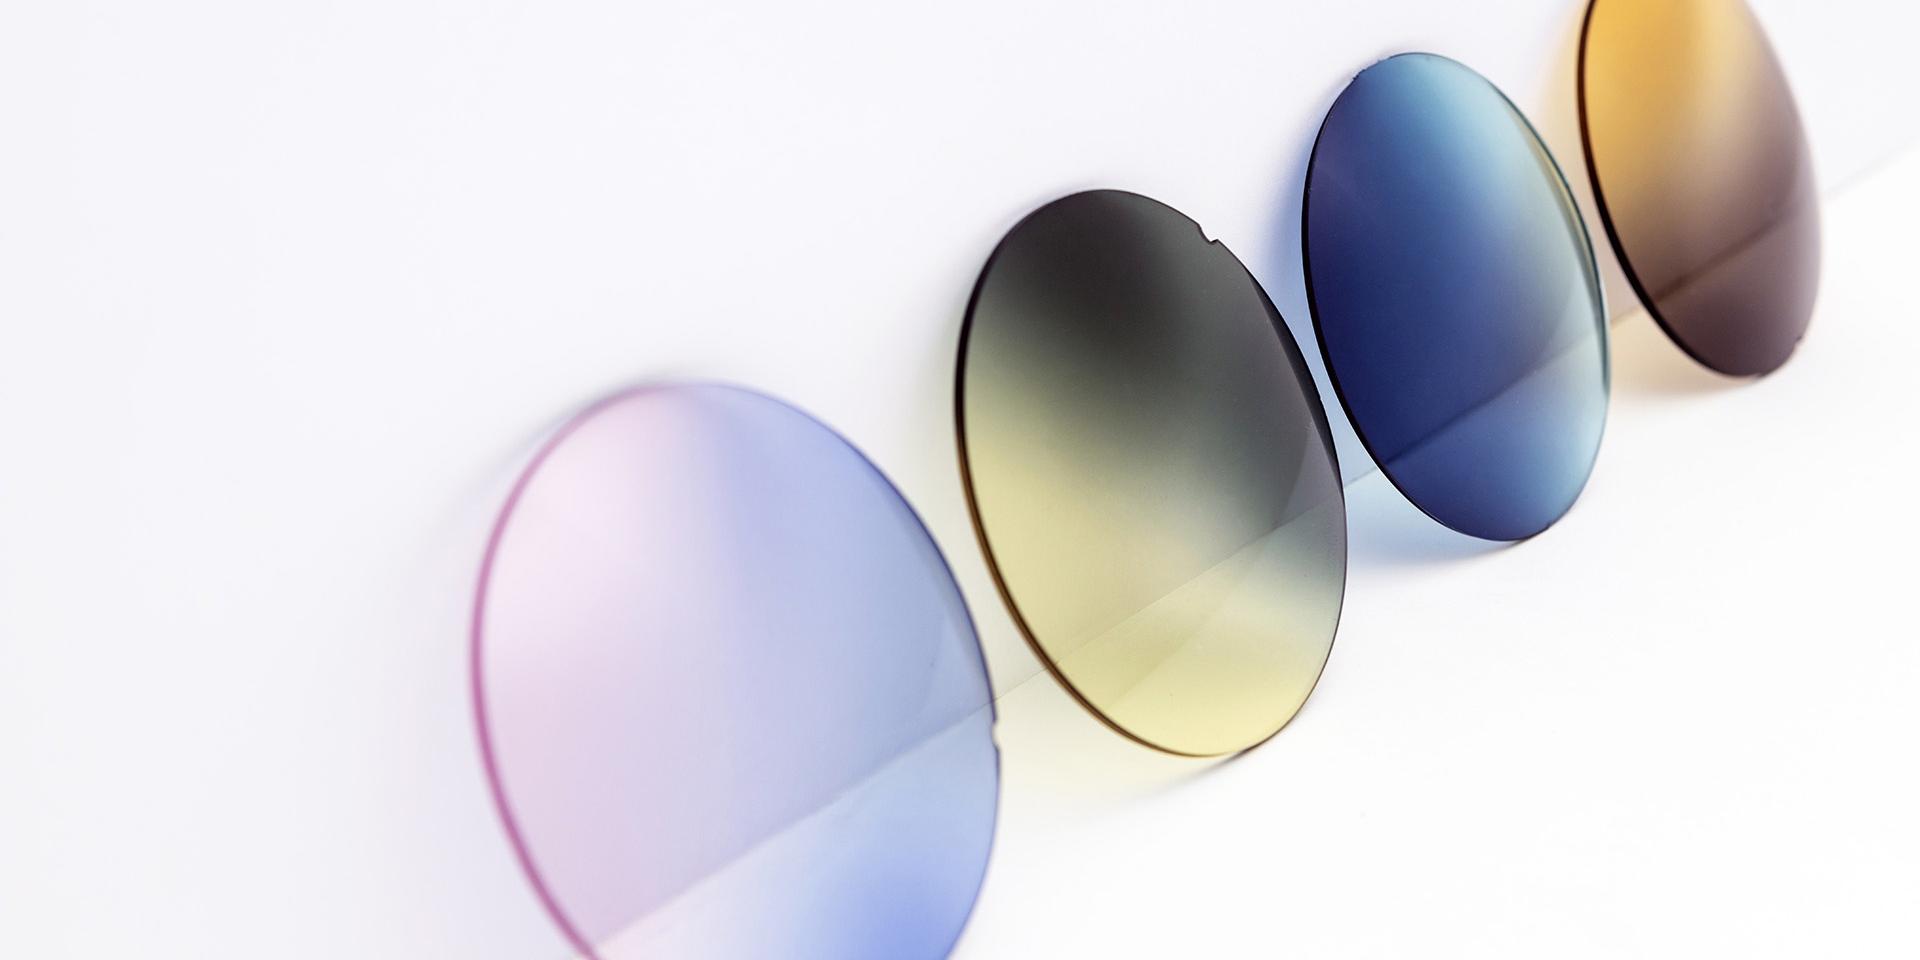 Verschillende gekleurde brillenglazen leunen tegen een wit oppervlak: roze-paars, geel-grijs, blauwe en bruine kleurverlopen.